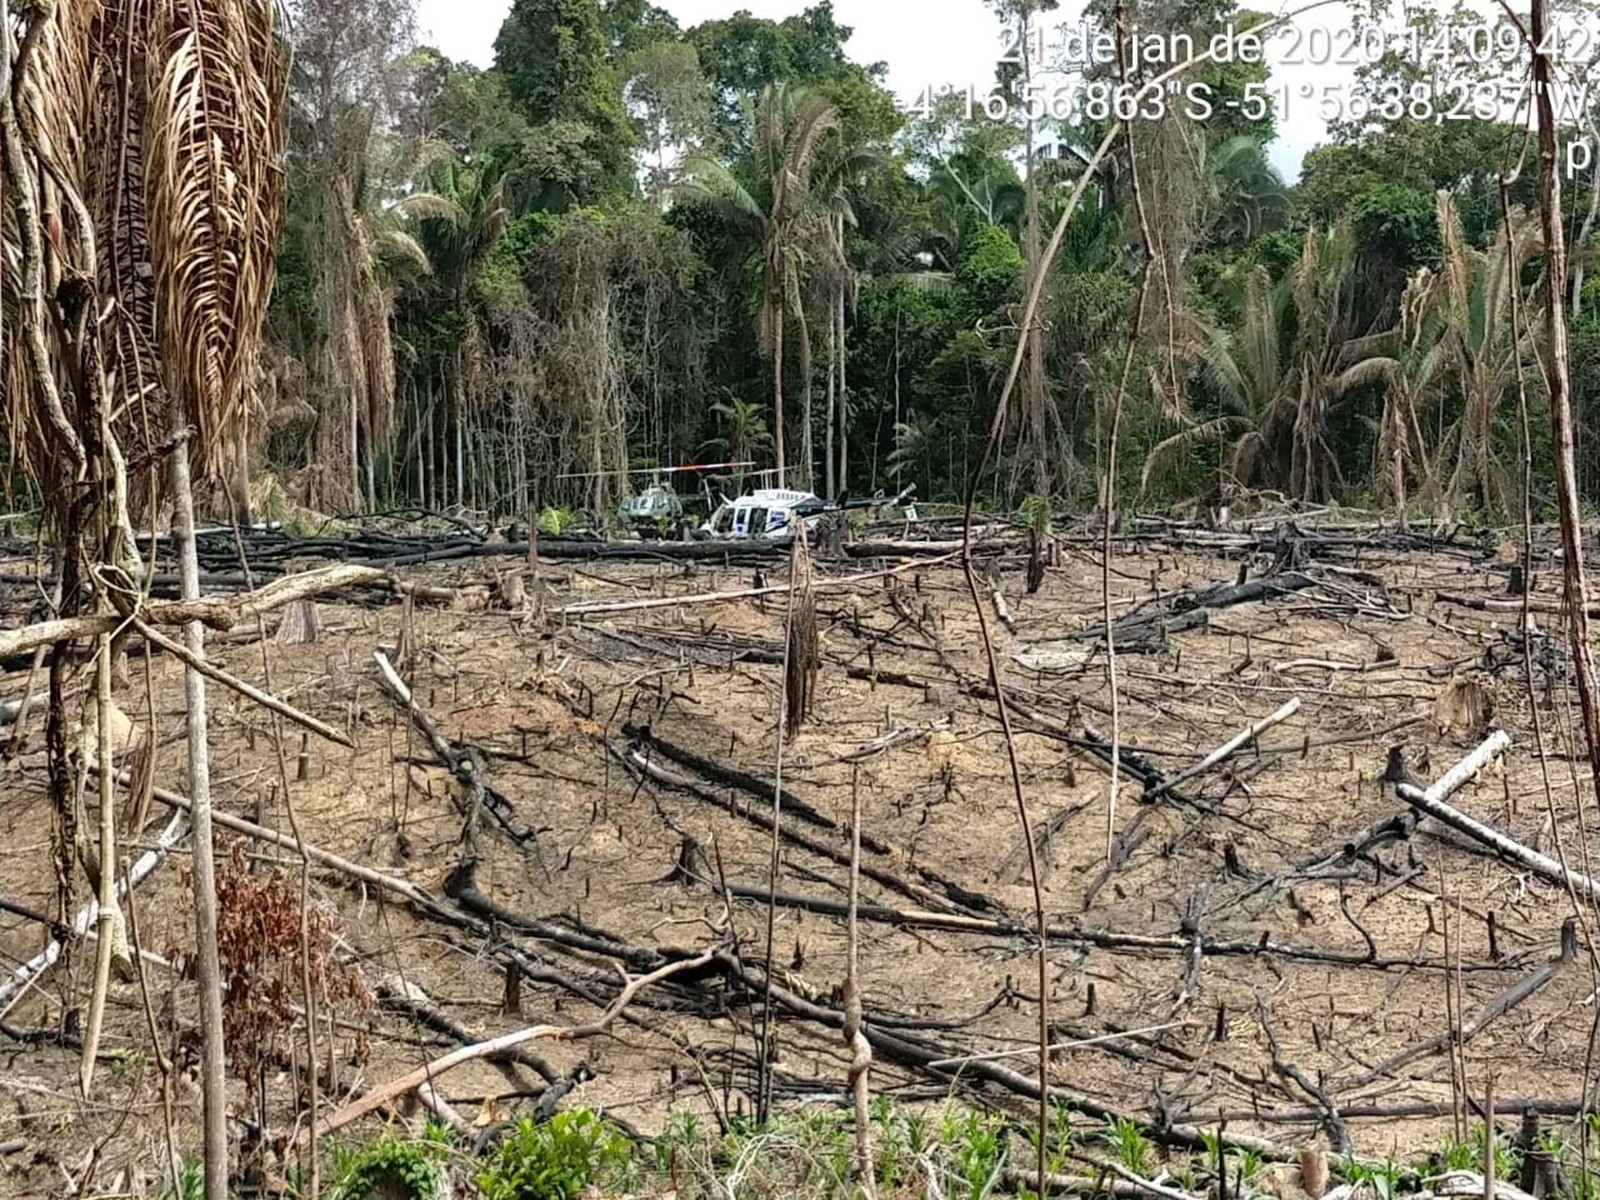 Imagem de fiscalização do Ibama na terra indígena Ituna-Itatá em 21 de janeiro de 2020 mostra sinais de desmatamento ilegal